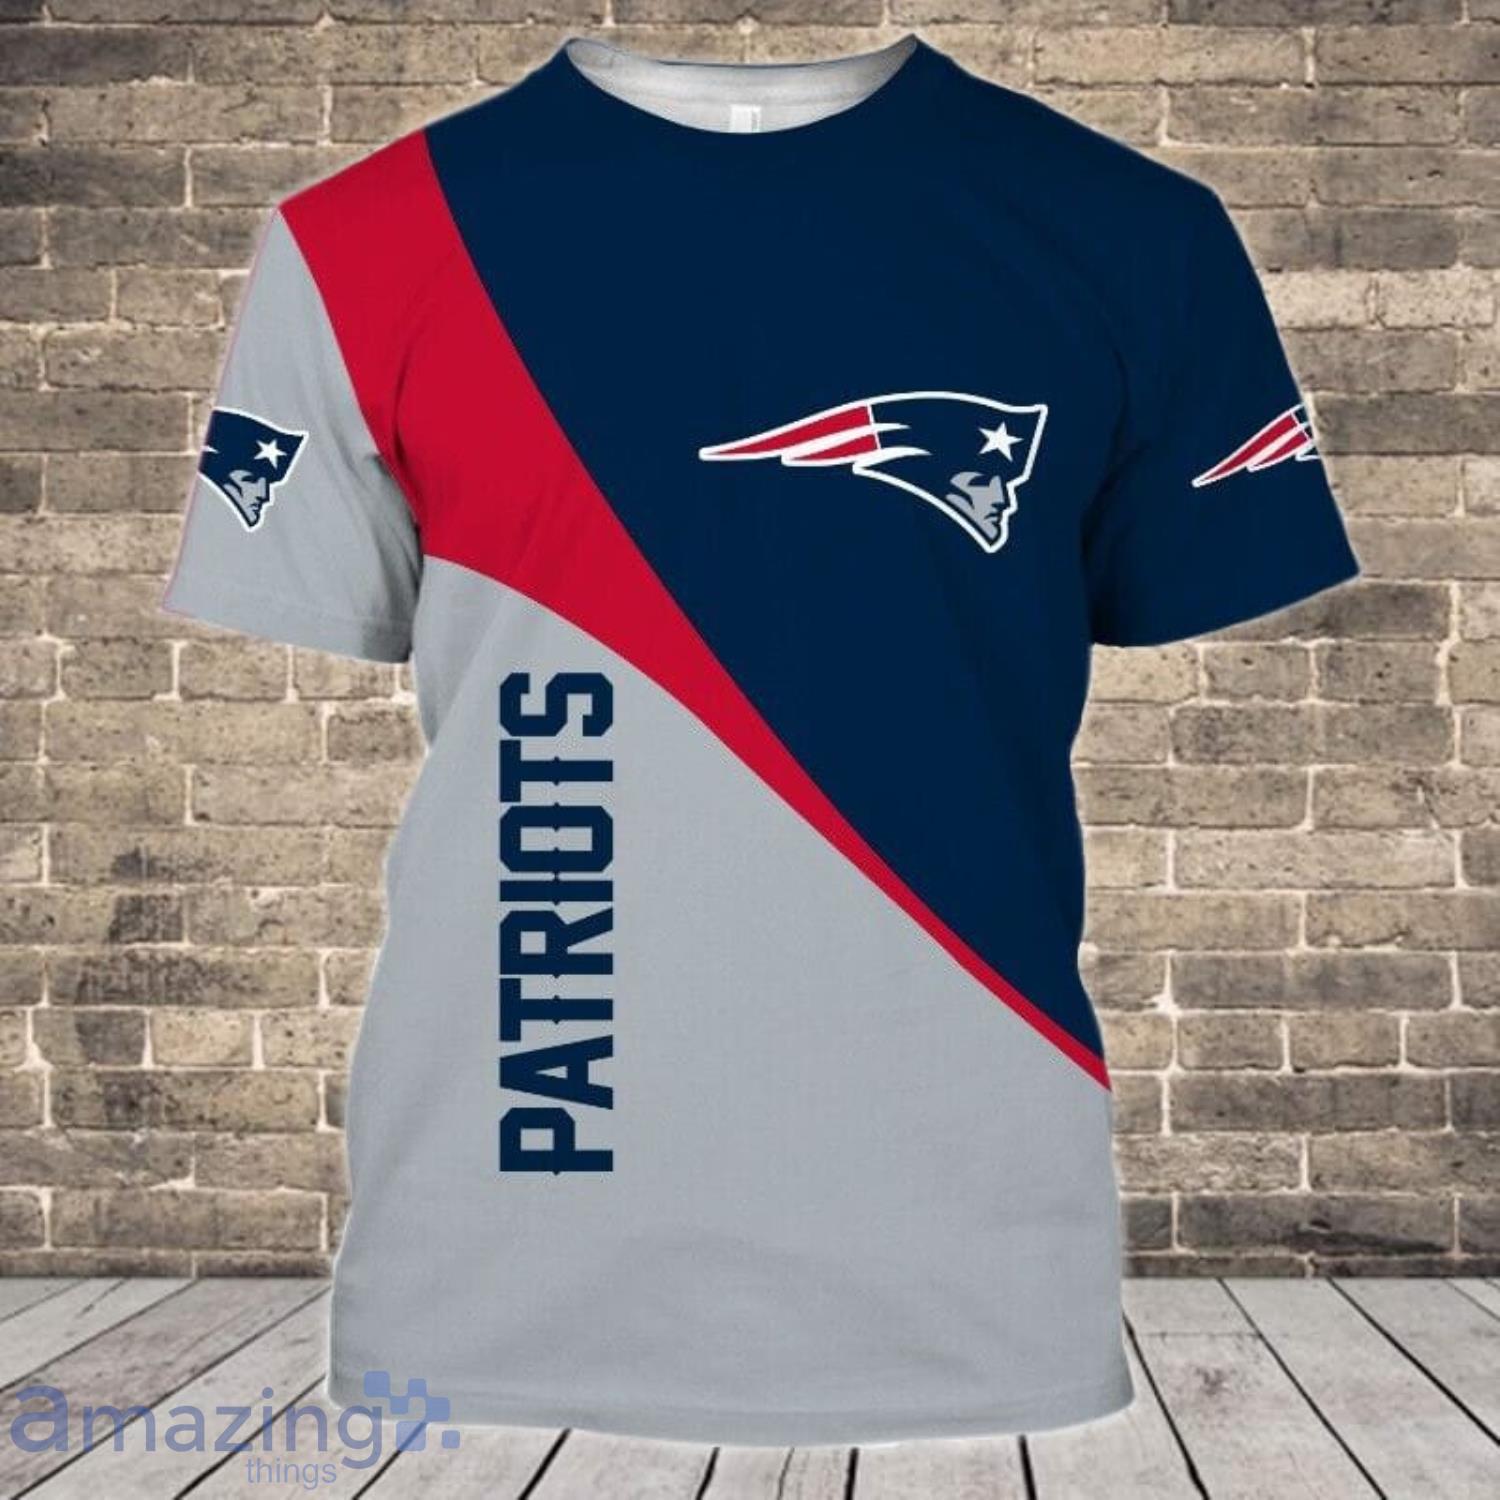 New England Patriots T Shirt, Vintage Patriots Tee